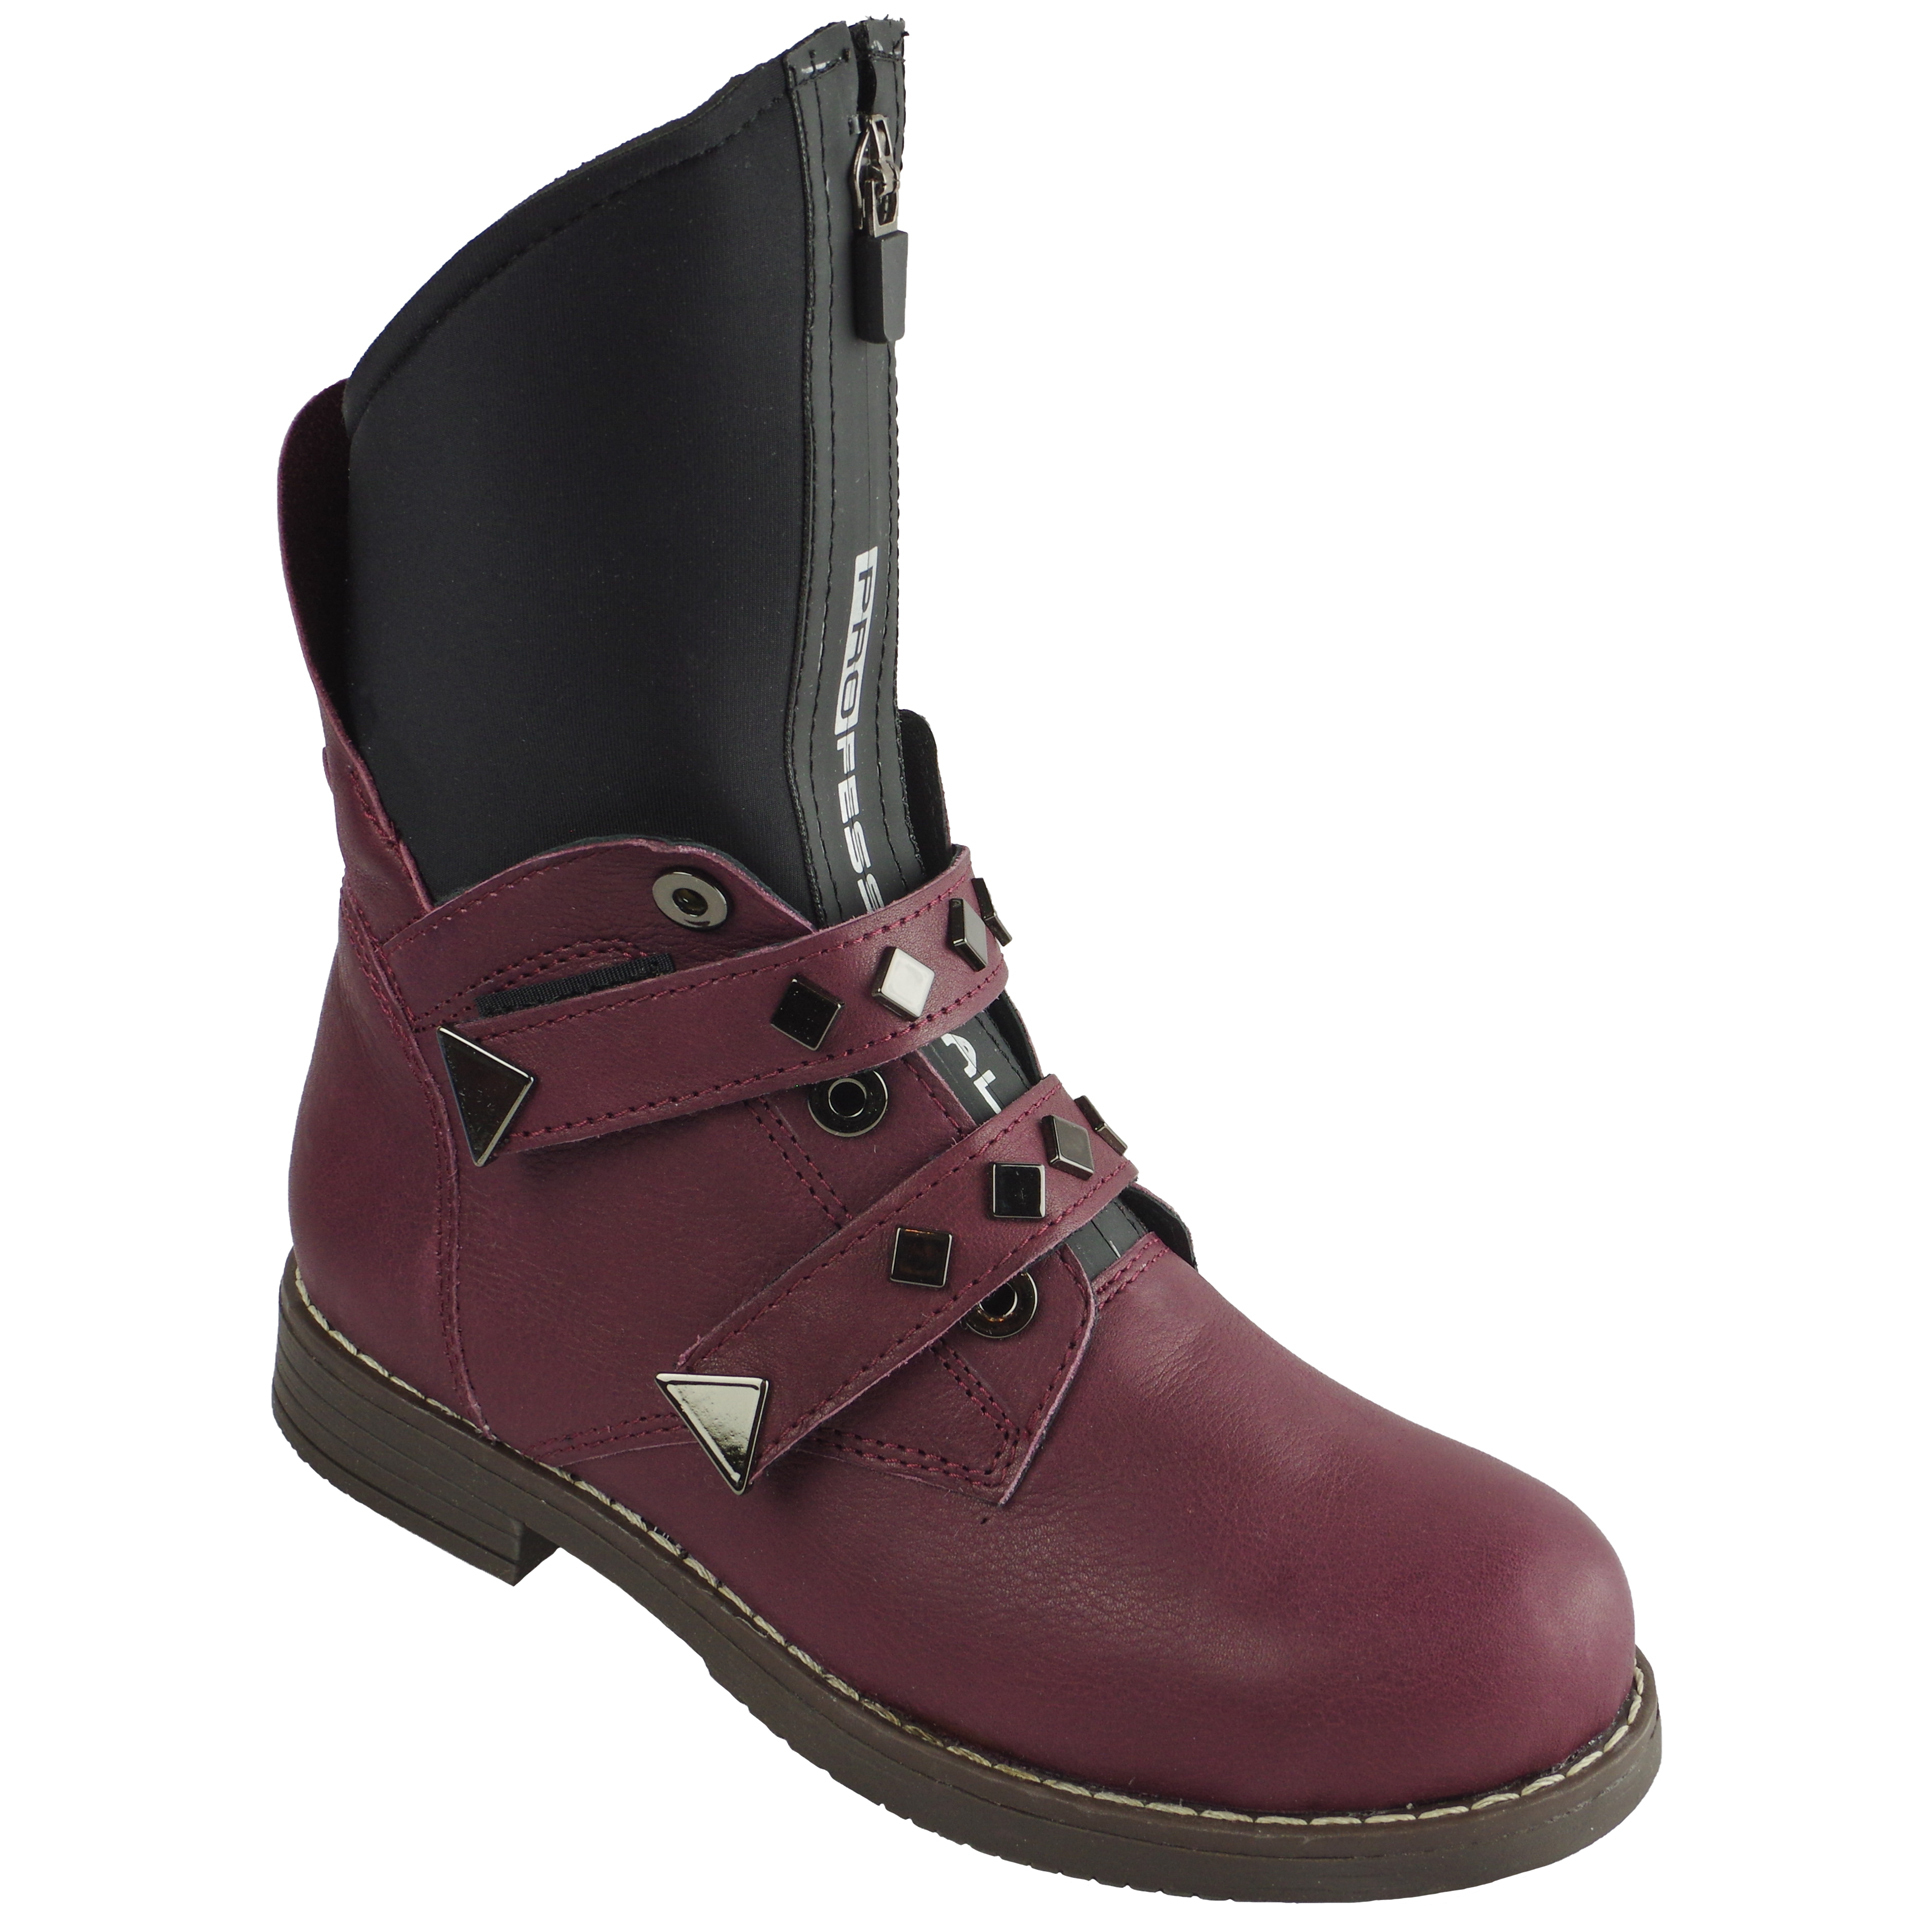 Демисезонные ботинки подростковые (2064) материал Натуральная кожа, цвет Бордовый  для девочки 32-38 размеры – Sole Kids. Фото 1